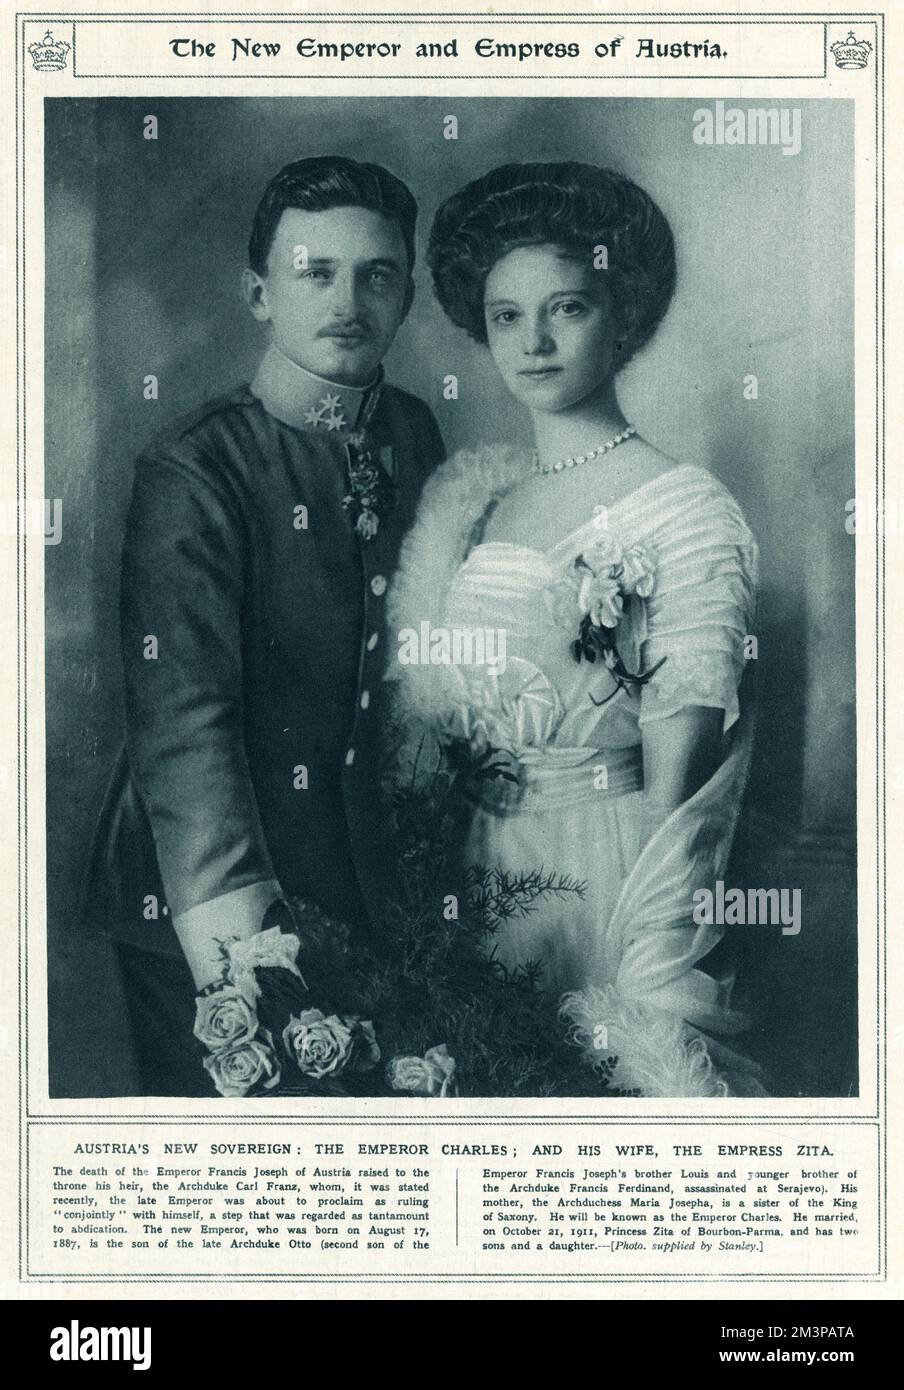 Imperatore Carlo i d'Austria o Carlo IV d'Ungheria (1887 - 1922) con la principessa Zita di Borbone-Parma (1892 - 1989). L'Imperatore Carlo i, l'ultimo sovrano dell'Impero Austro-Ungarico, e l'ultimo dell'ultimo Imperatore di Austria e Ungheria. Regnò come Carlo i come Imperatore d'Austria e Carlo IV come Re d'Ungheria dal 1916 al 1918, quando "riprendeva la partecipazione" agli affari statali, ma non abdicava. Trascorse i rimanenti anni della sua vita cercando di restaurare la monarchia fino alla sua morte nel 1922. Foto Stock